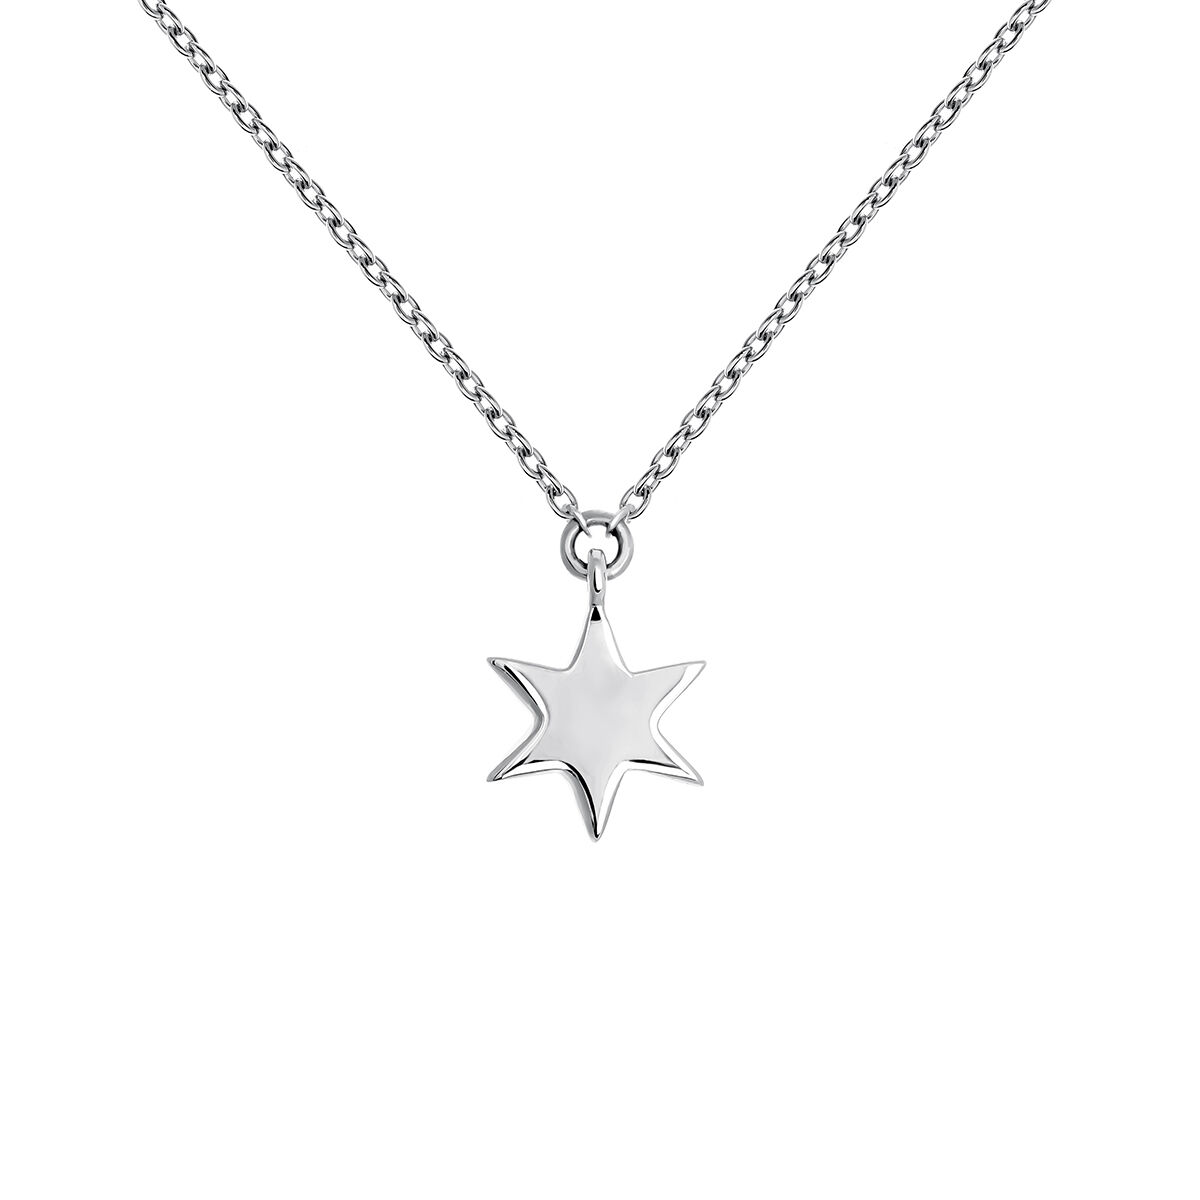 9 kt white gold star necklace , J03863-01, hi-res